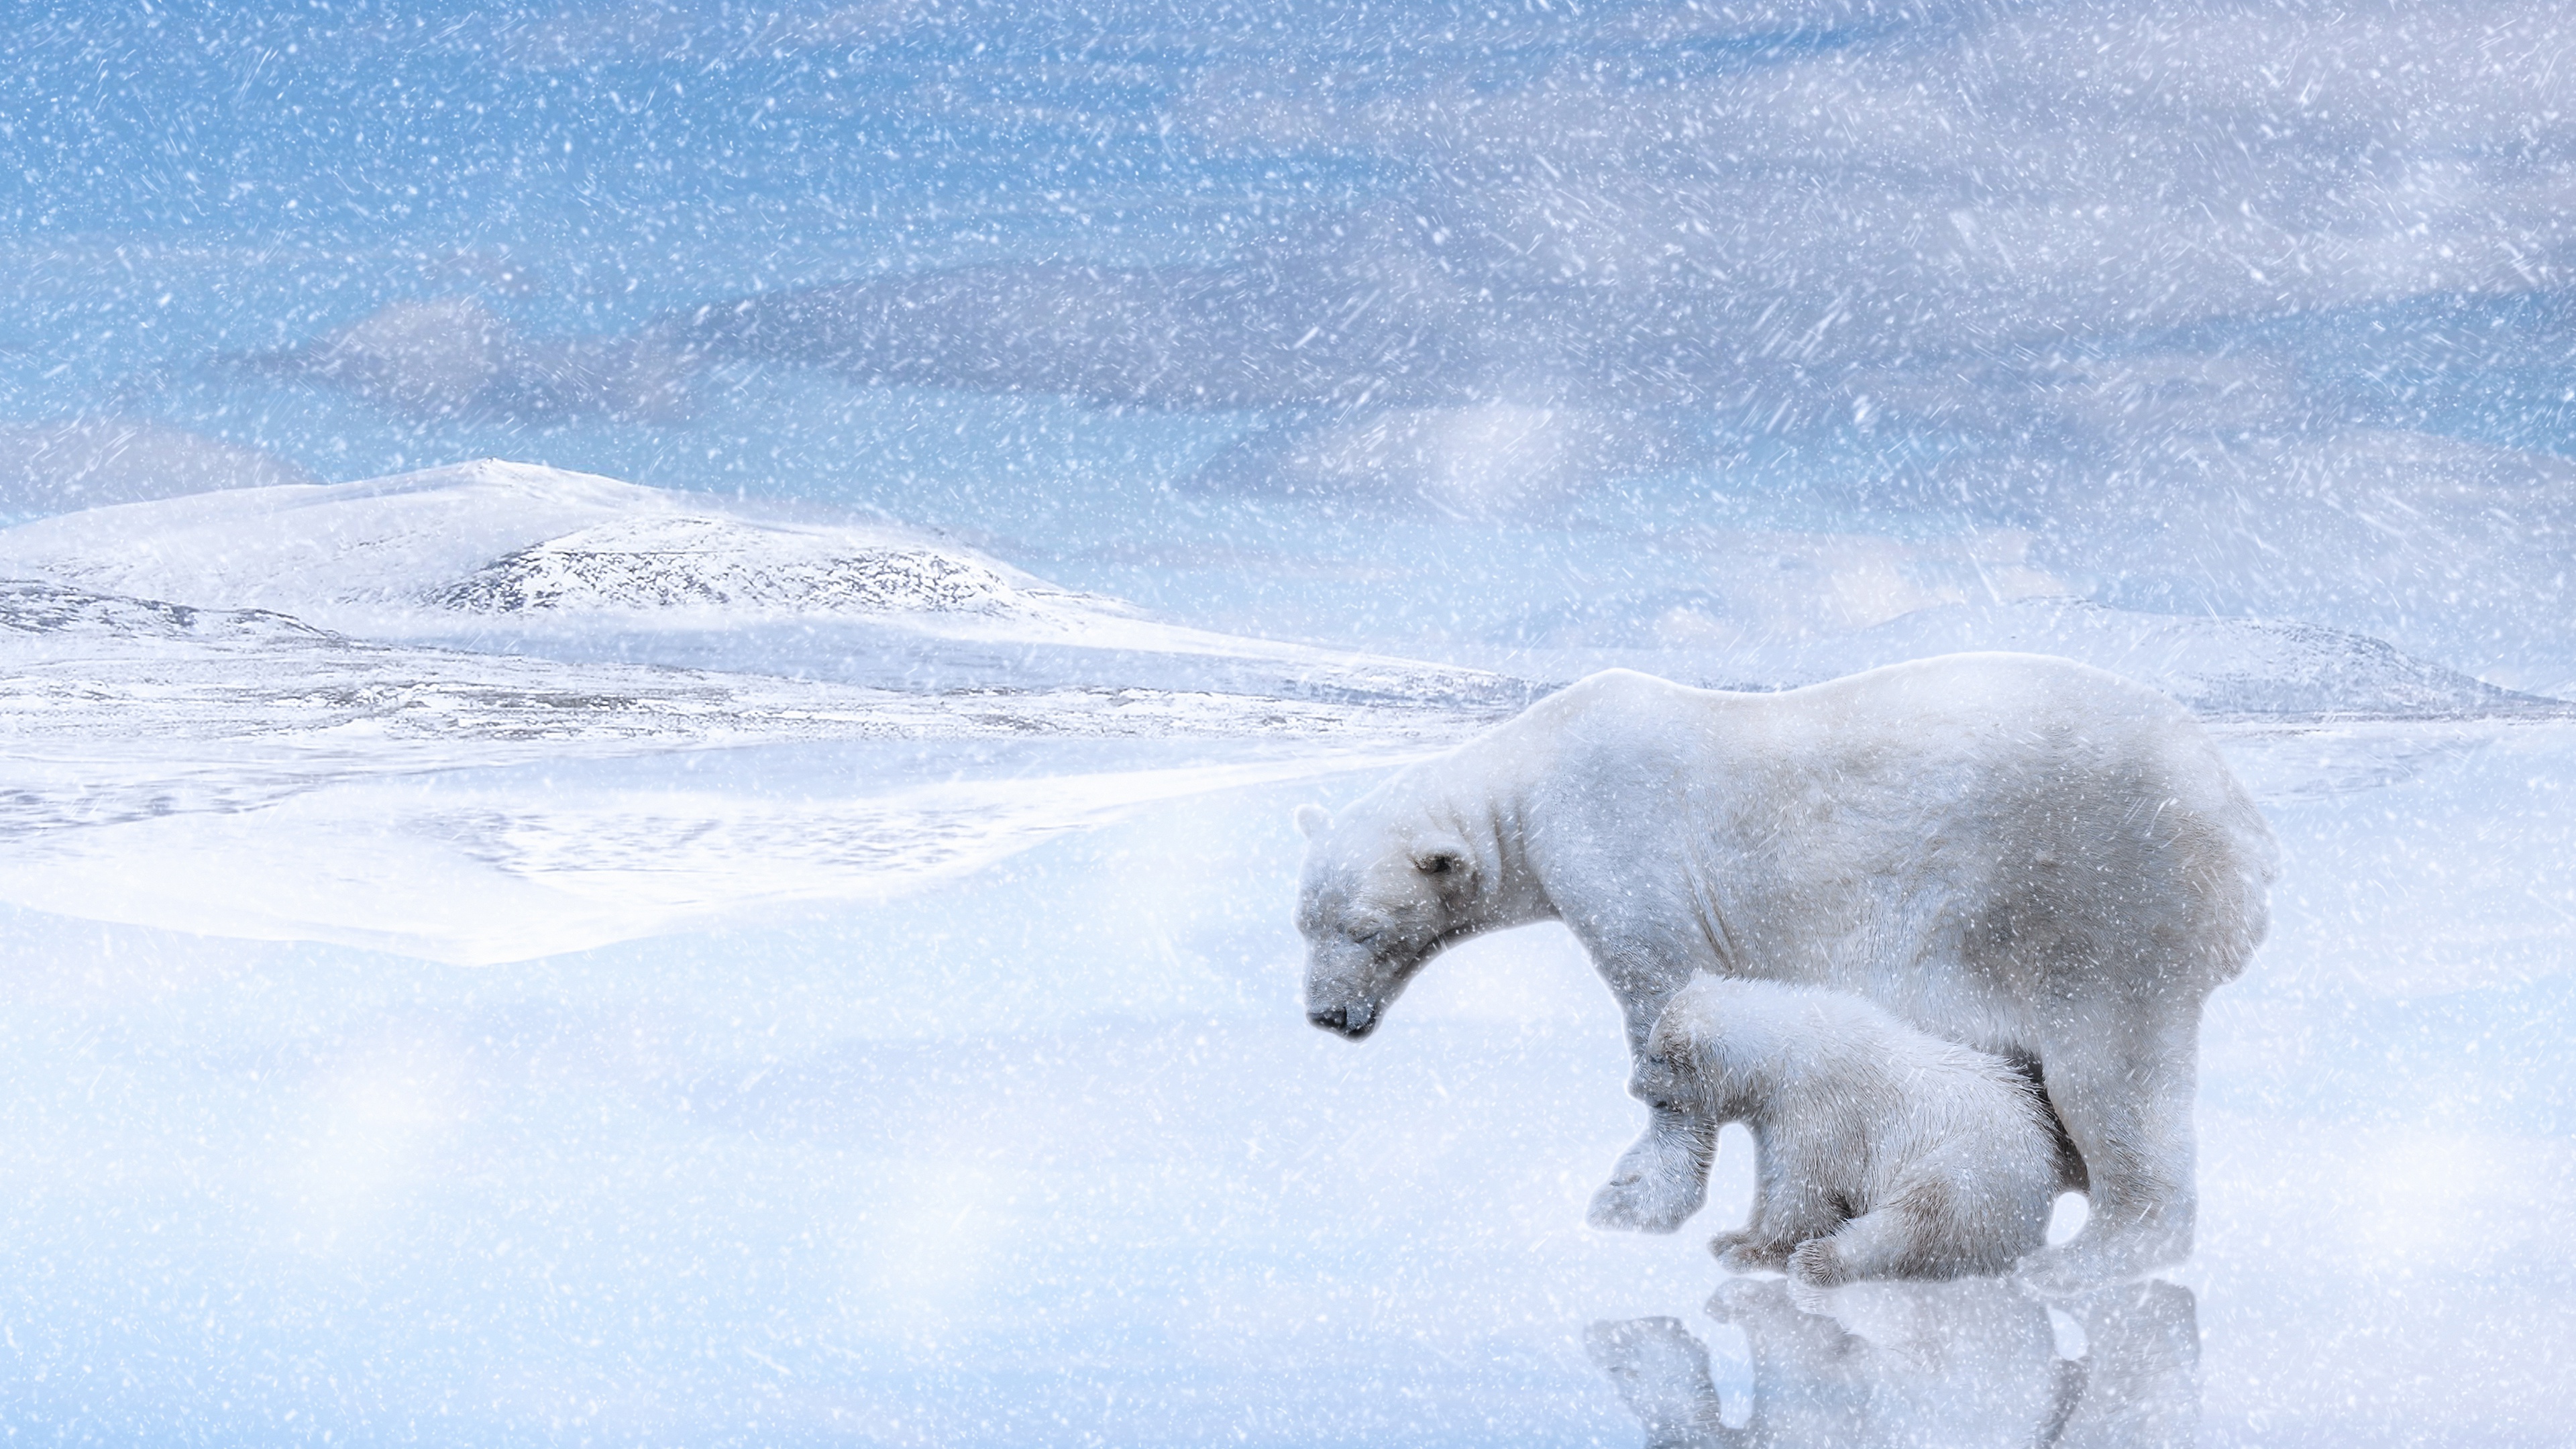 Скачать обои бесплатно Животные, Зима, Снег, Медведи, Медведь, Полярный Медведь картинка на рабочий стол ПК